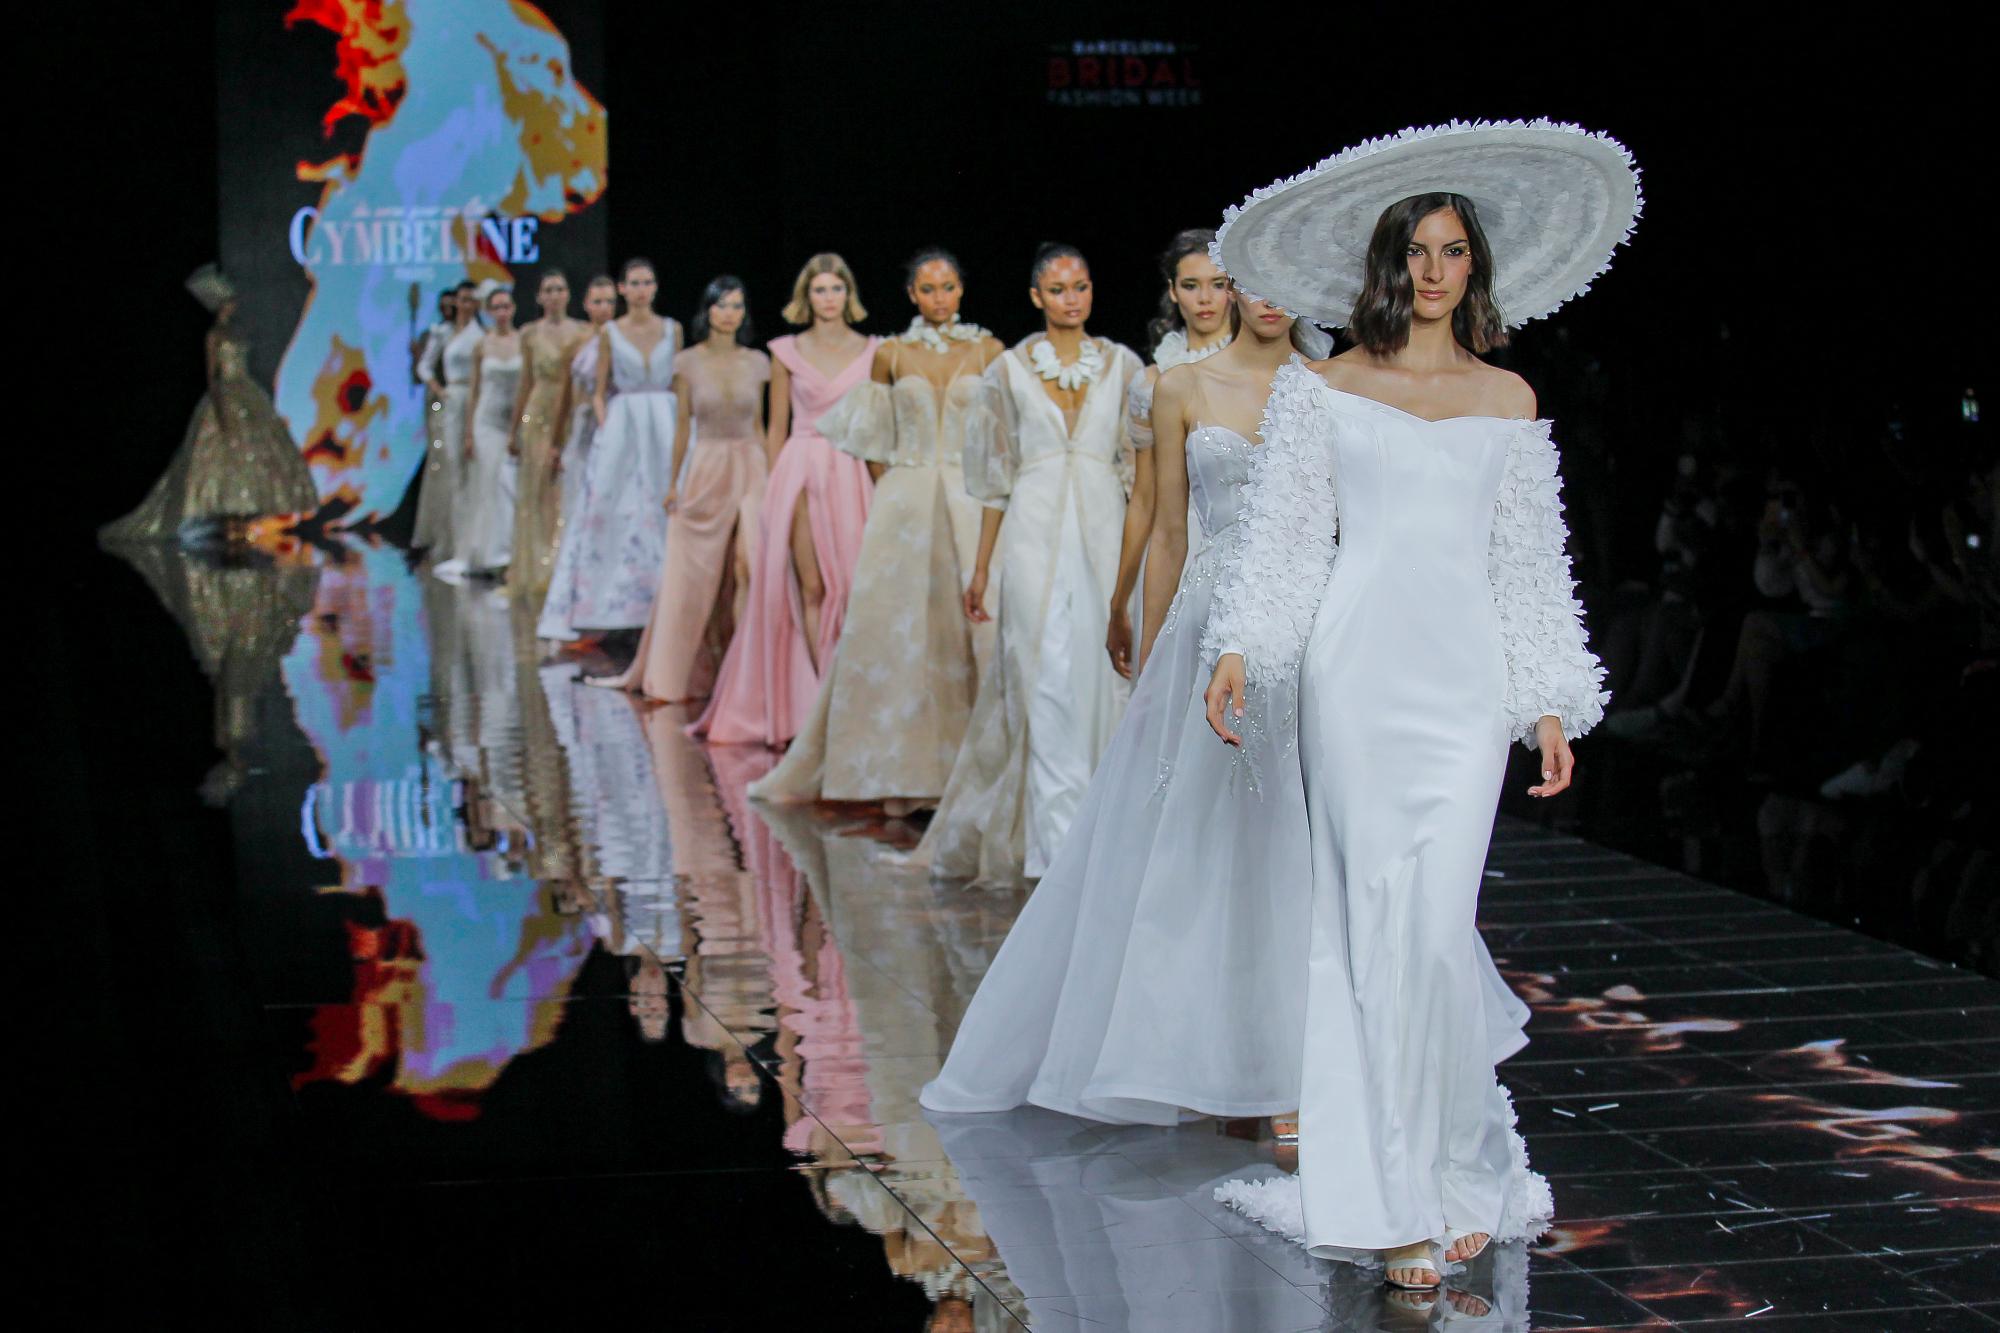 Barcelona Bridal Fashion Week: La Cumbre Mundial de la Moda Nupcial Deslumbra con 37 Diseñadores Internacionales